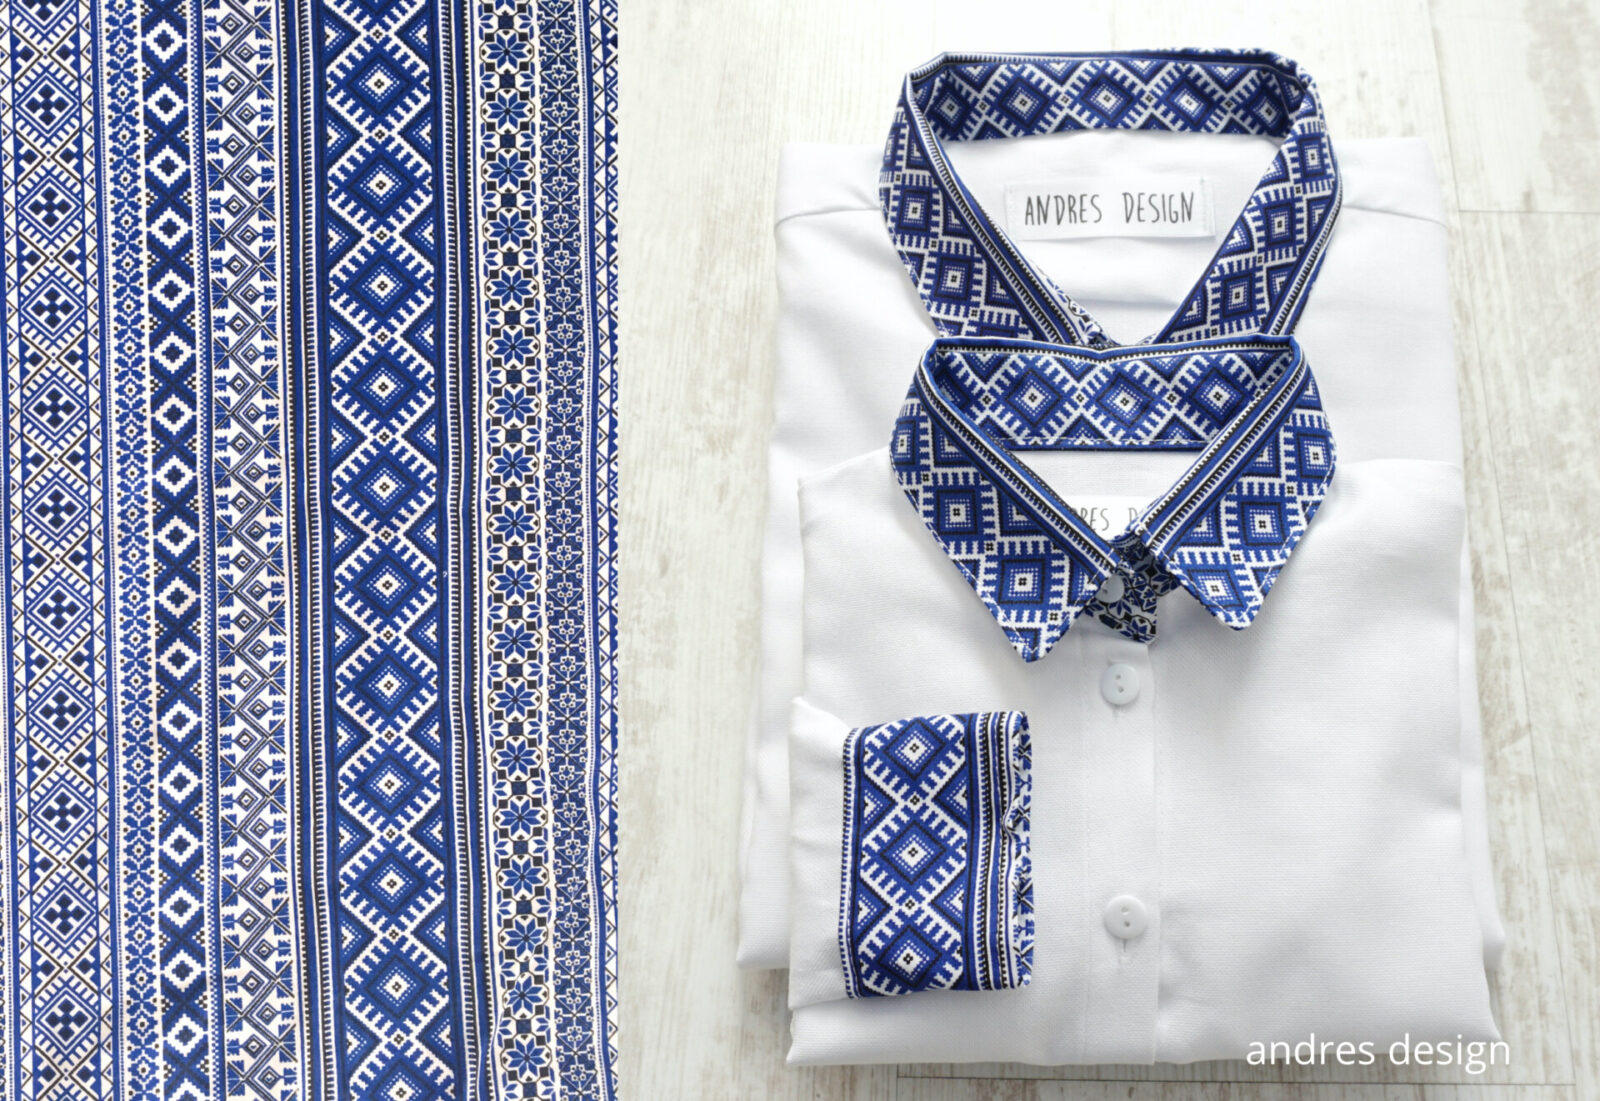 Camasi Tata Fiu – albe cu motive romanesti albastre